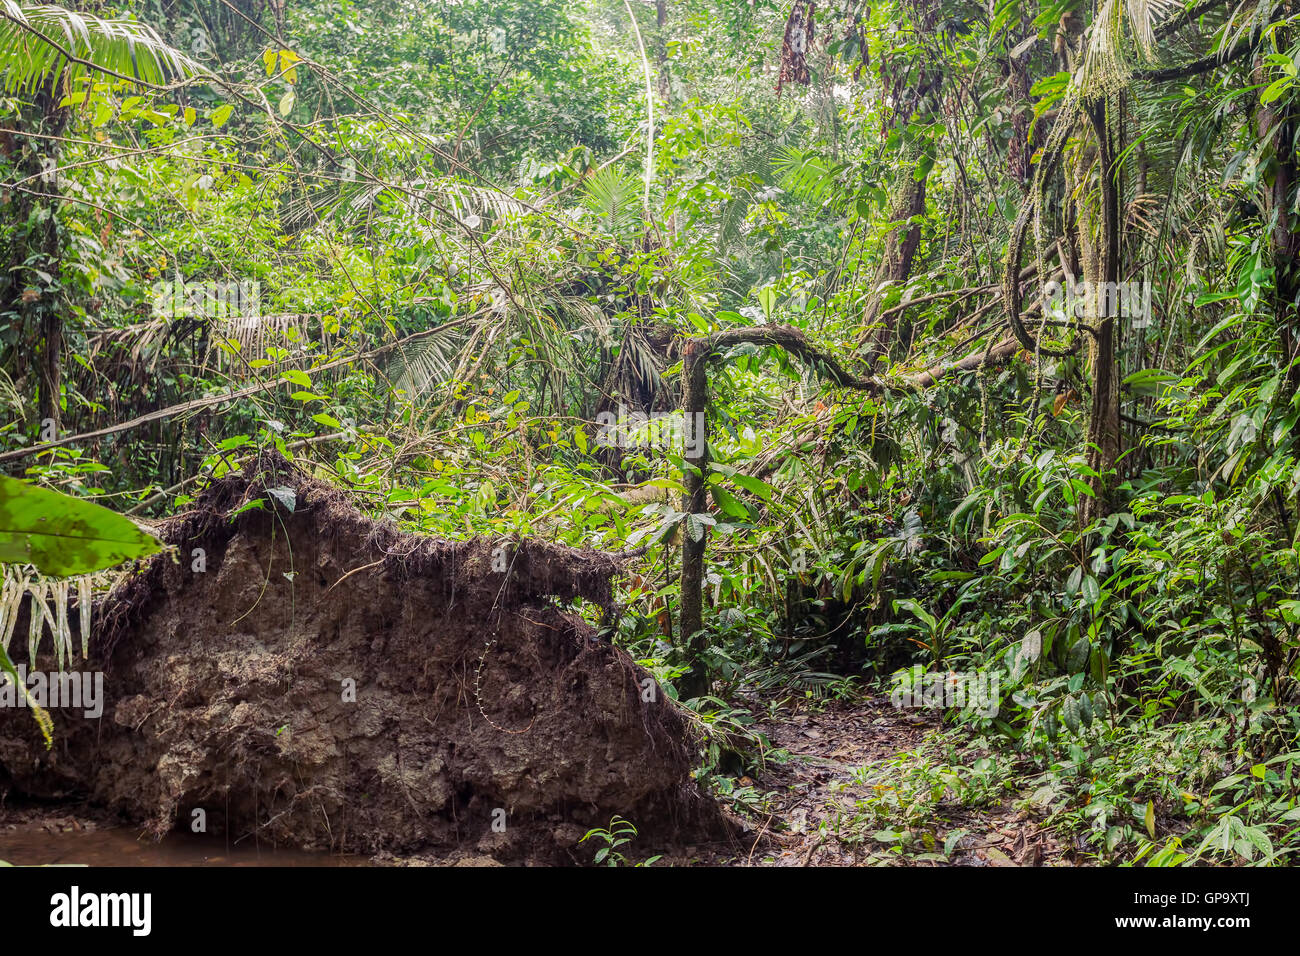 Dans l'environnement tropical humide de l'Amazonie Jungle, Parc National Cuyabeno, Amérique du Sud Banque D'Images